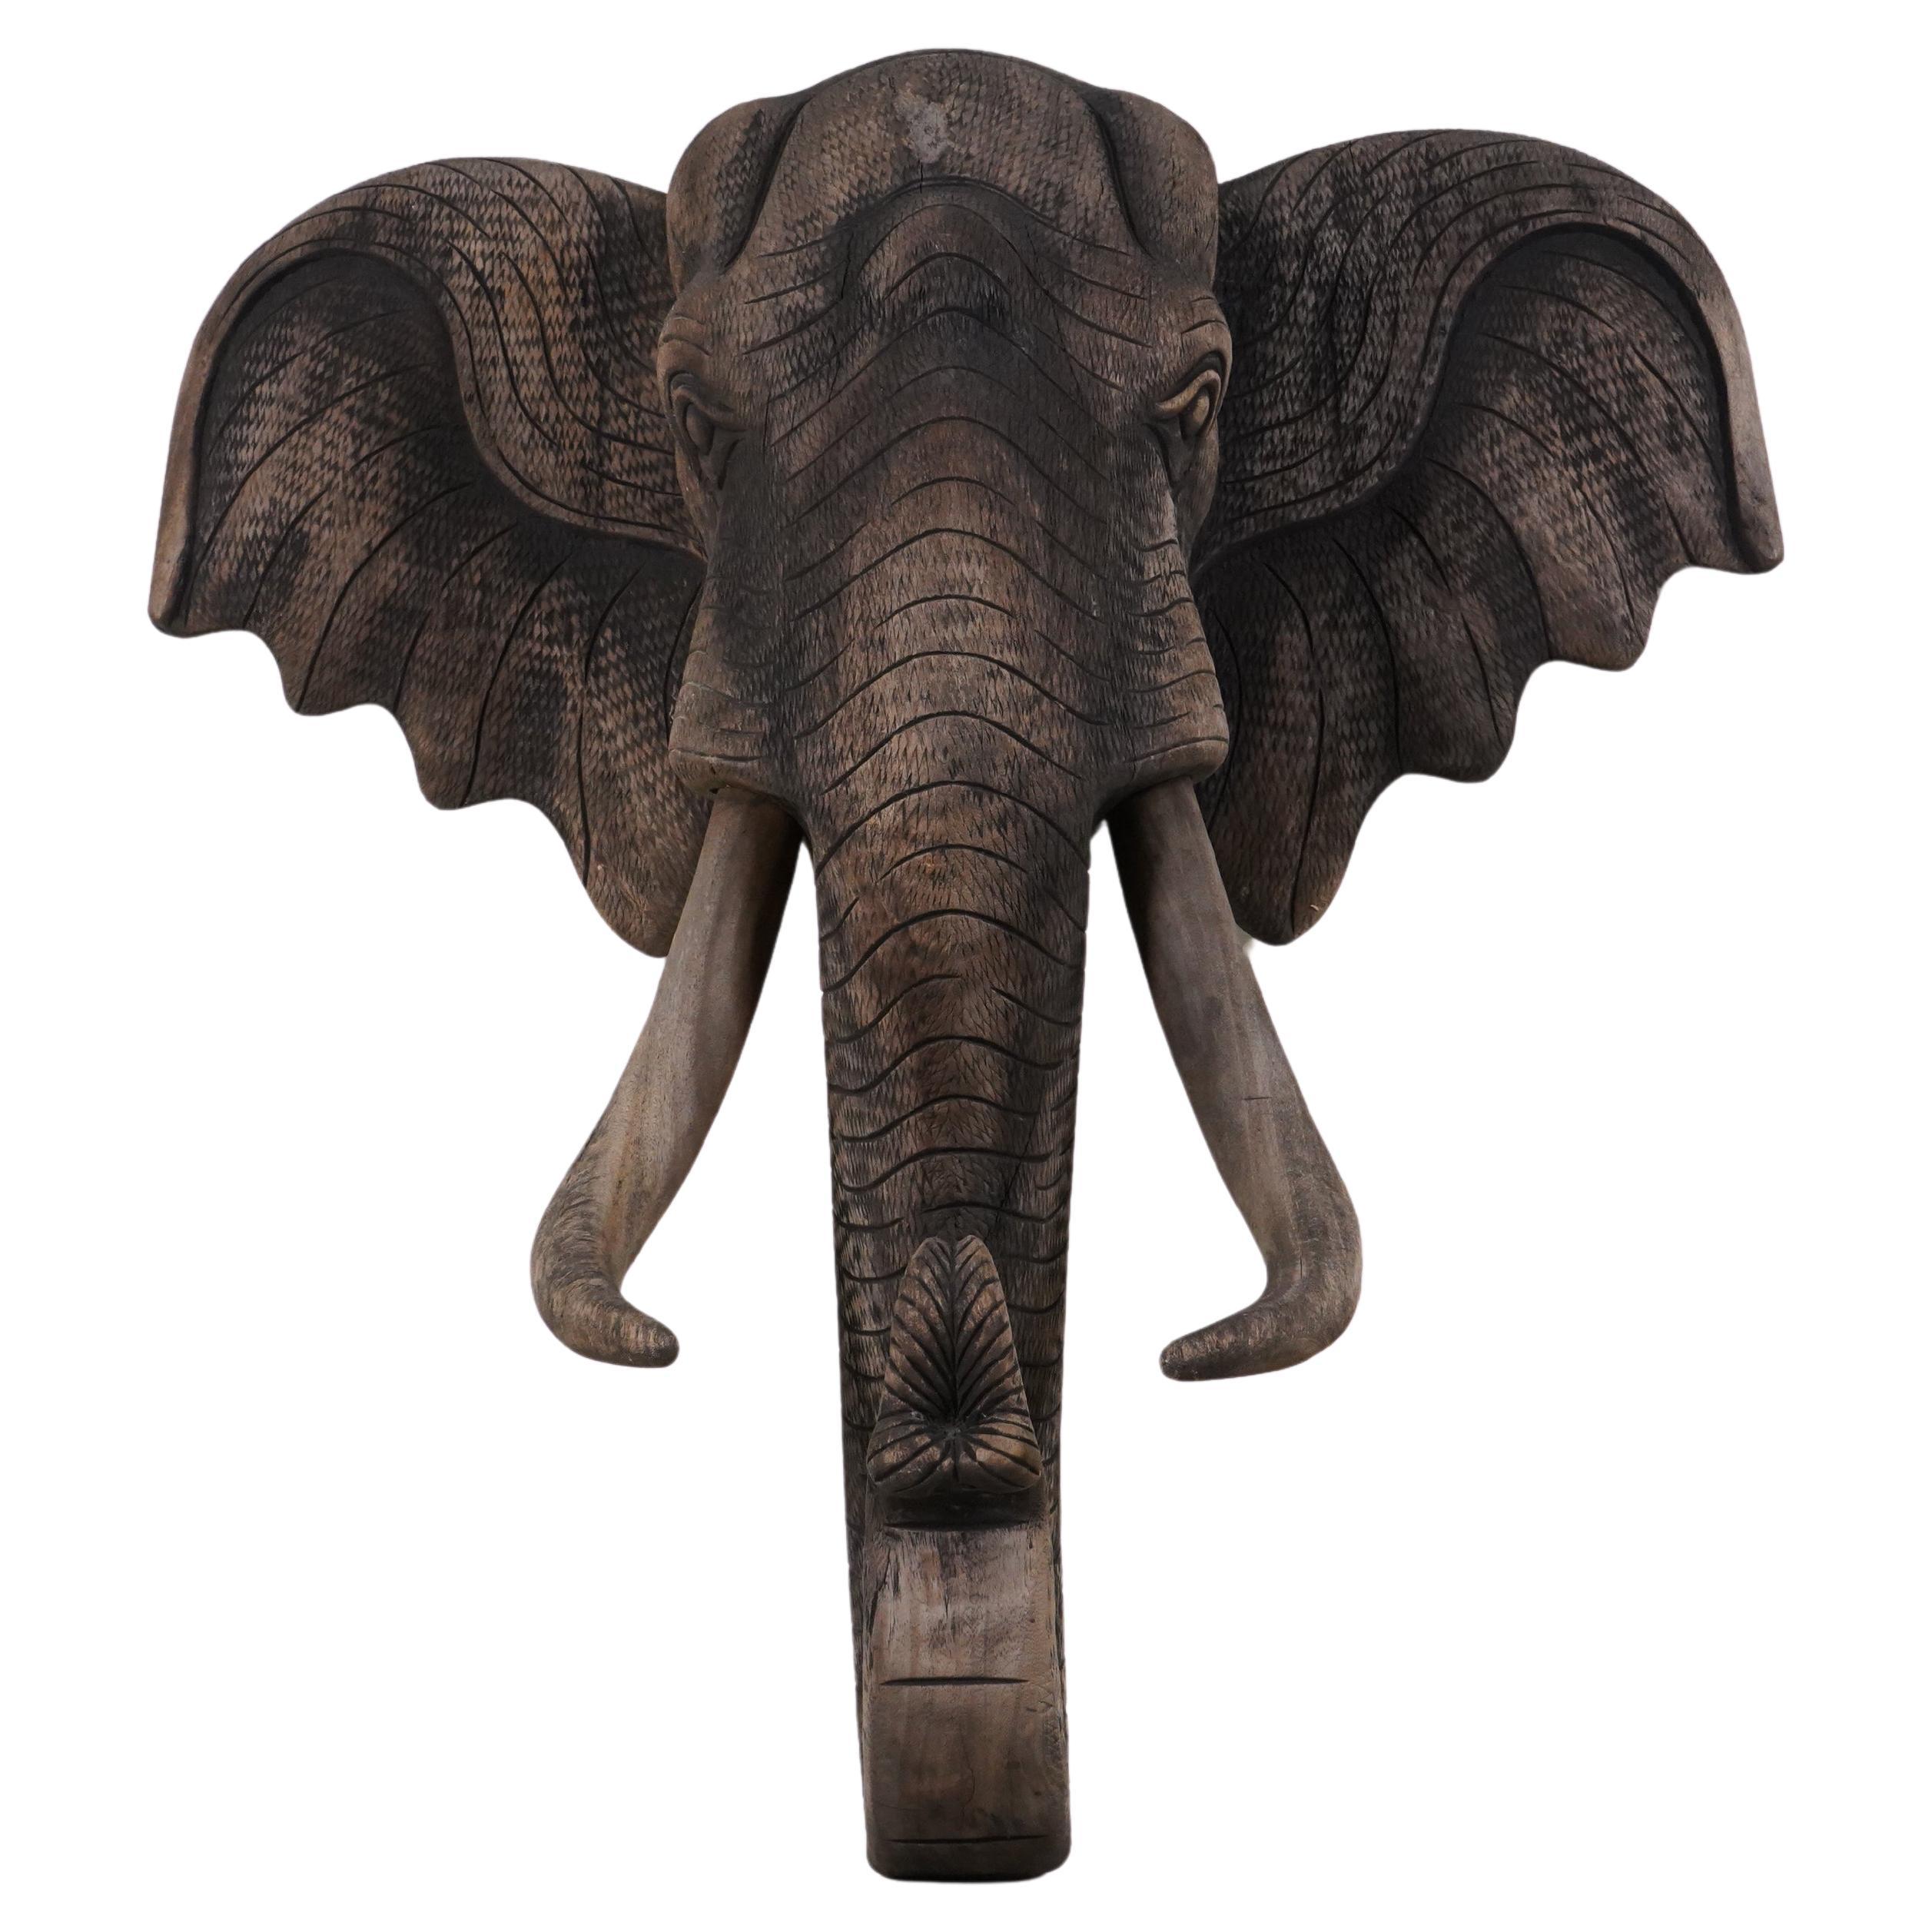 A Carved Wood Elephant Head